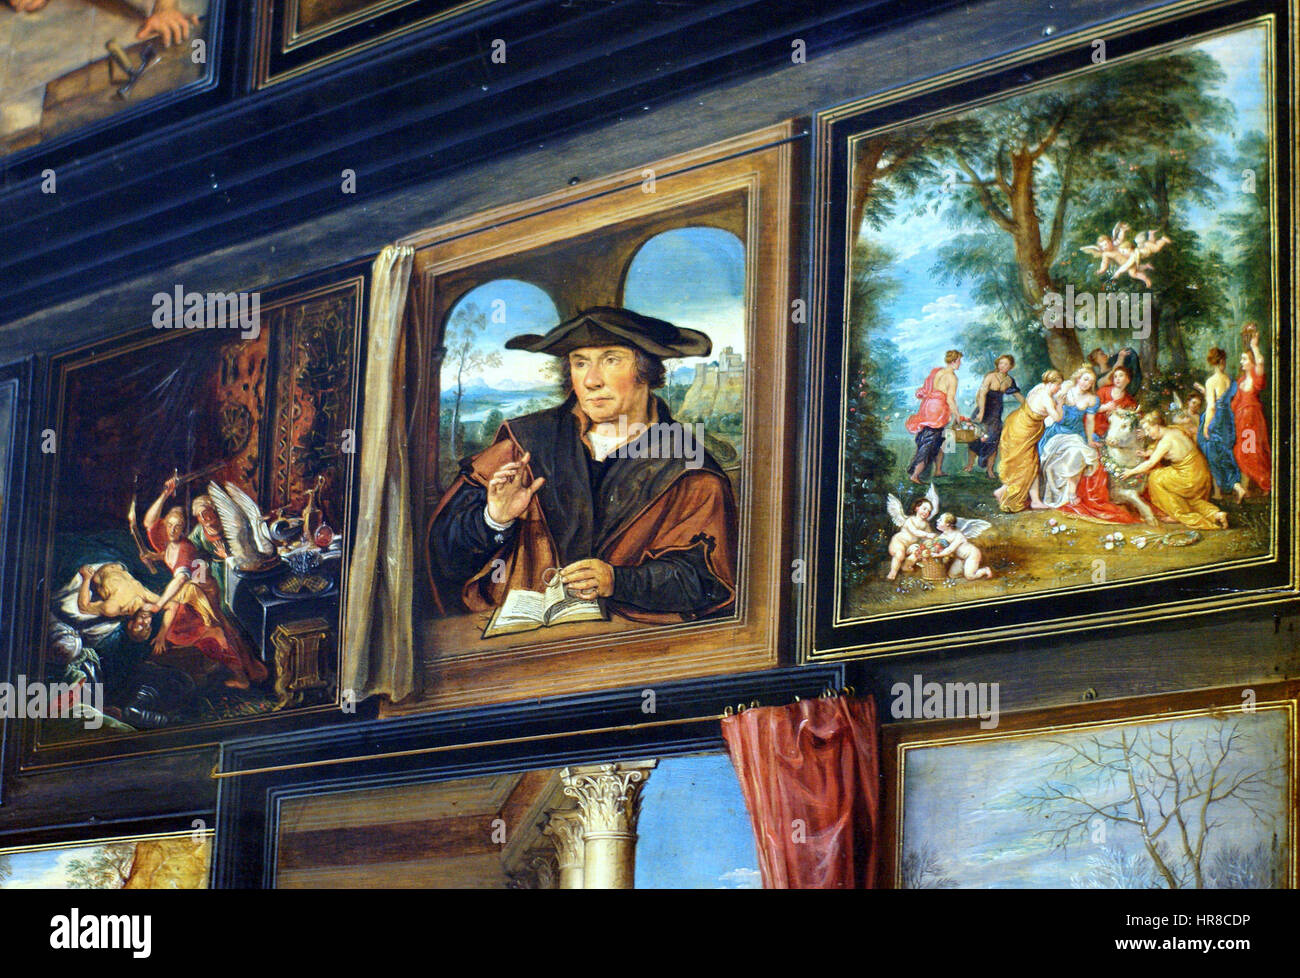 Willem van Haecht - Apelles Gemälde Campaspe - Detail oben rechts Stockfoto